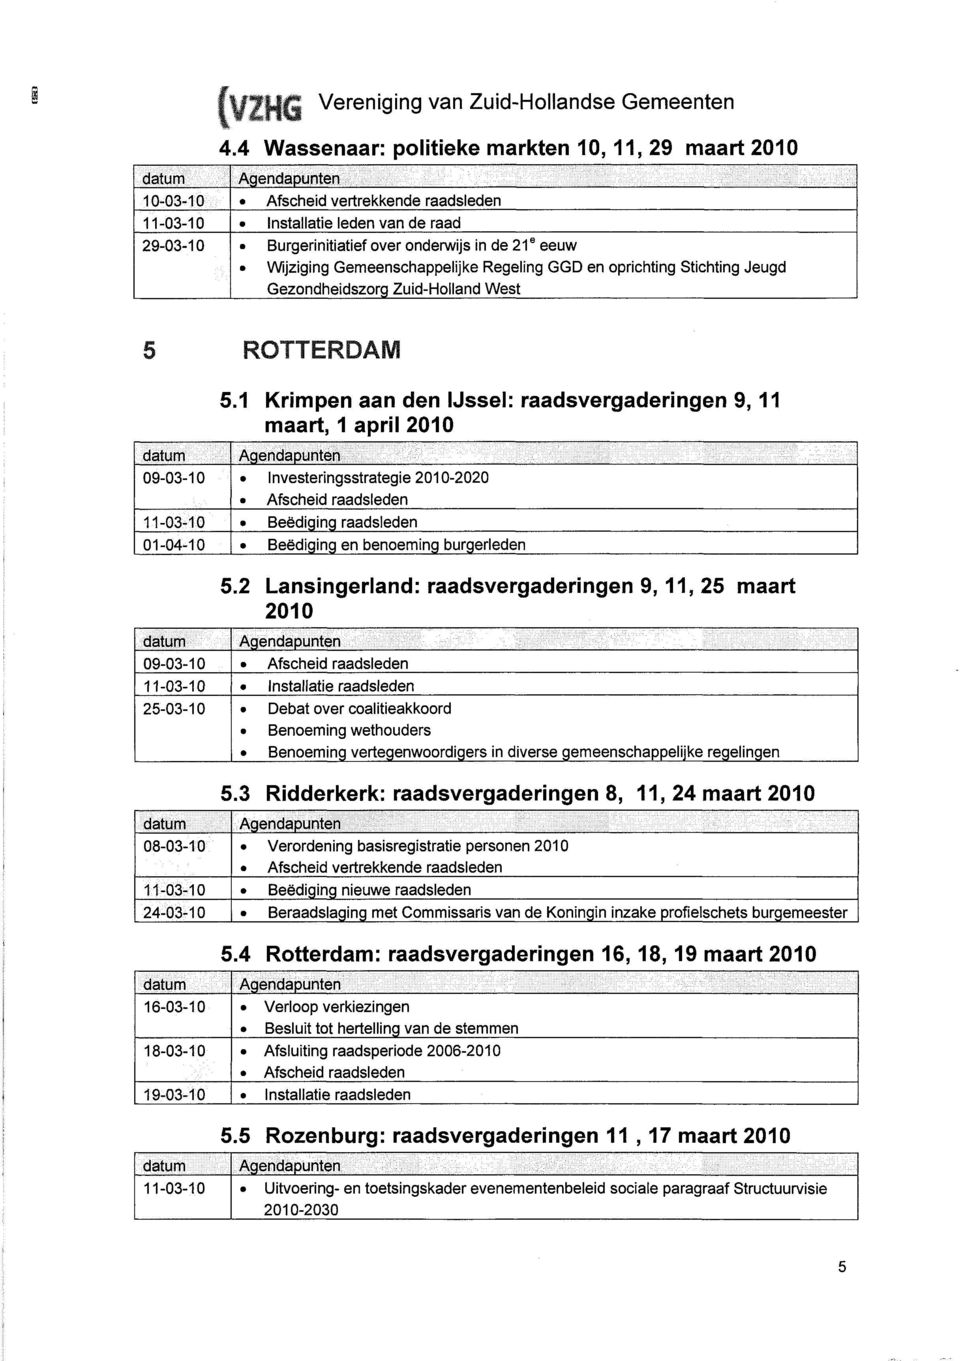 Gezondheidszorg Zuid-Holland West ROTTERDAM 01-04-10 08-03-10 24-03-10 16-03-10 18-03-10 19-03-10 5.